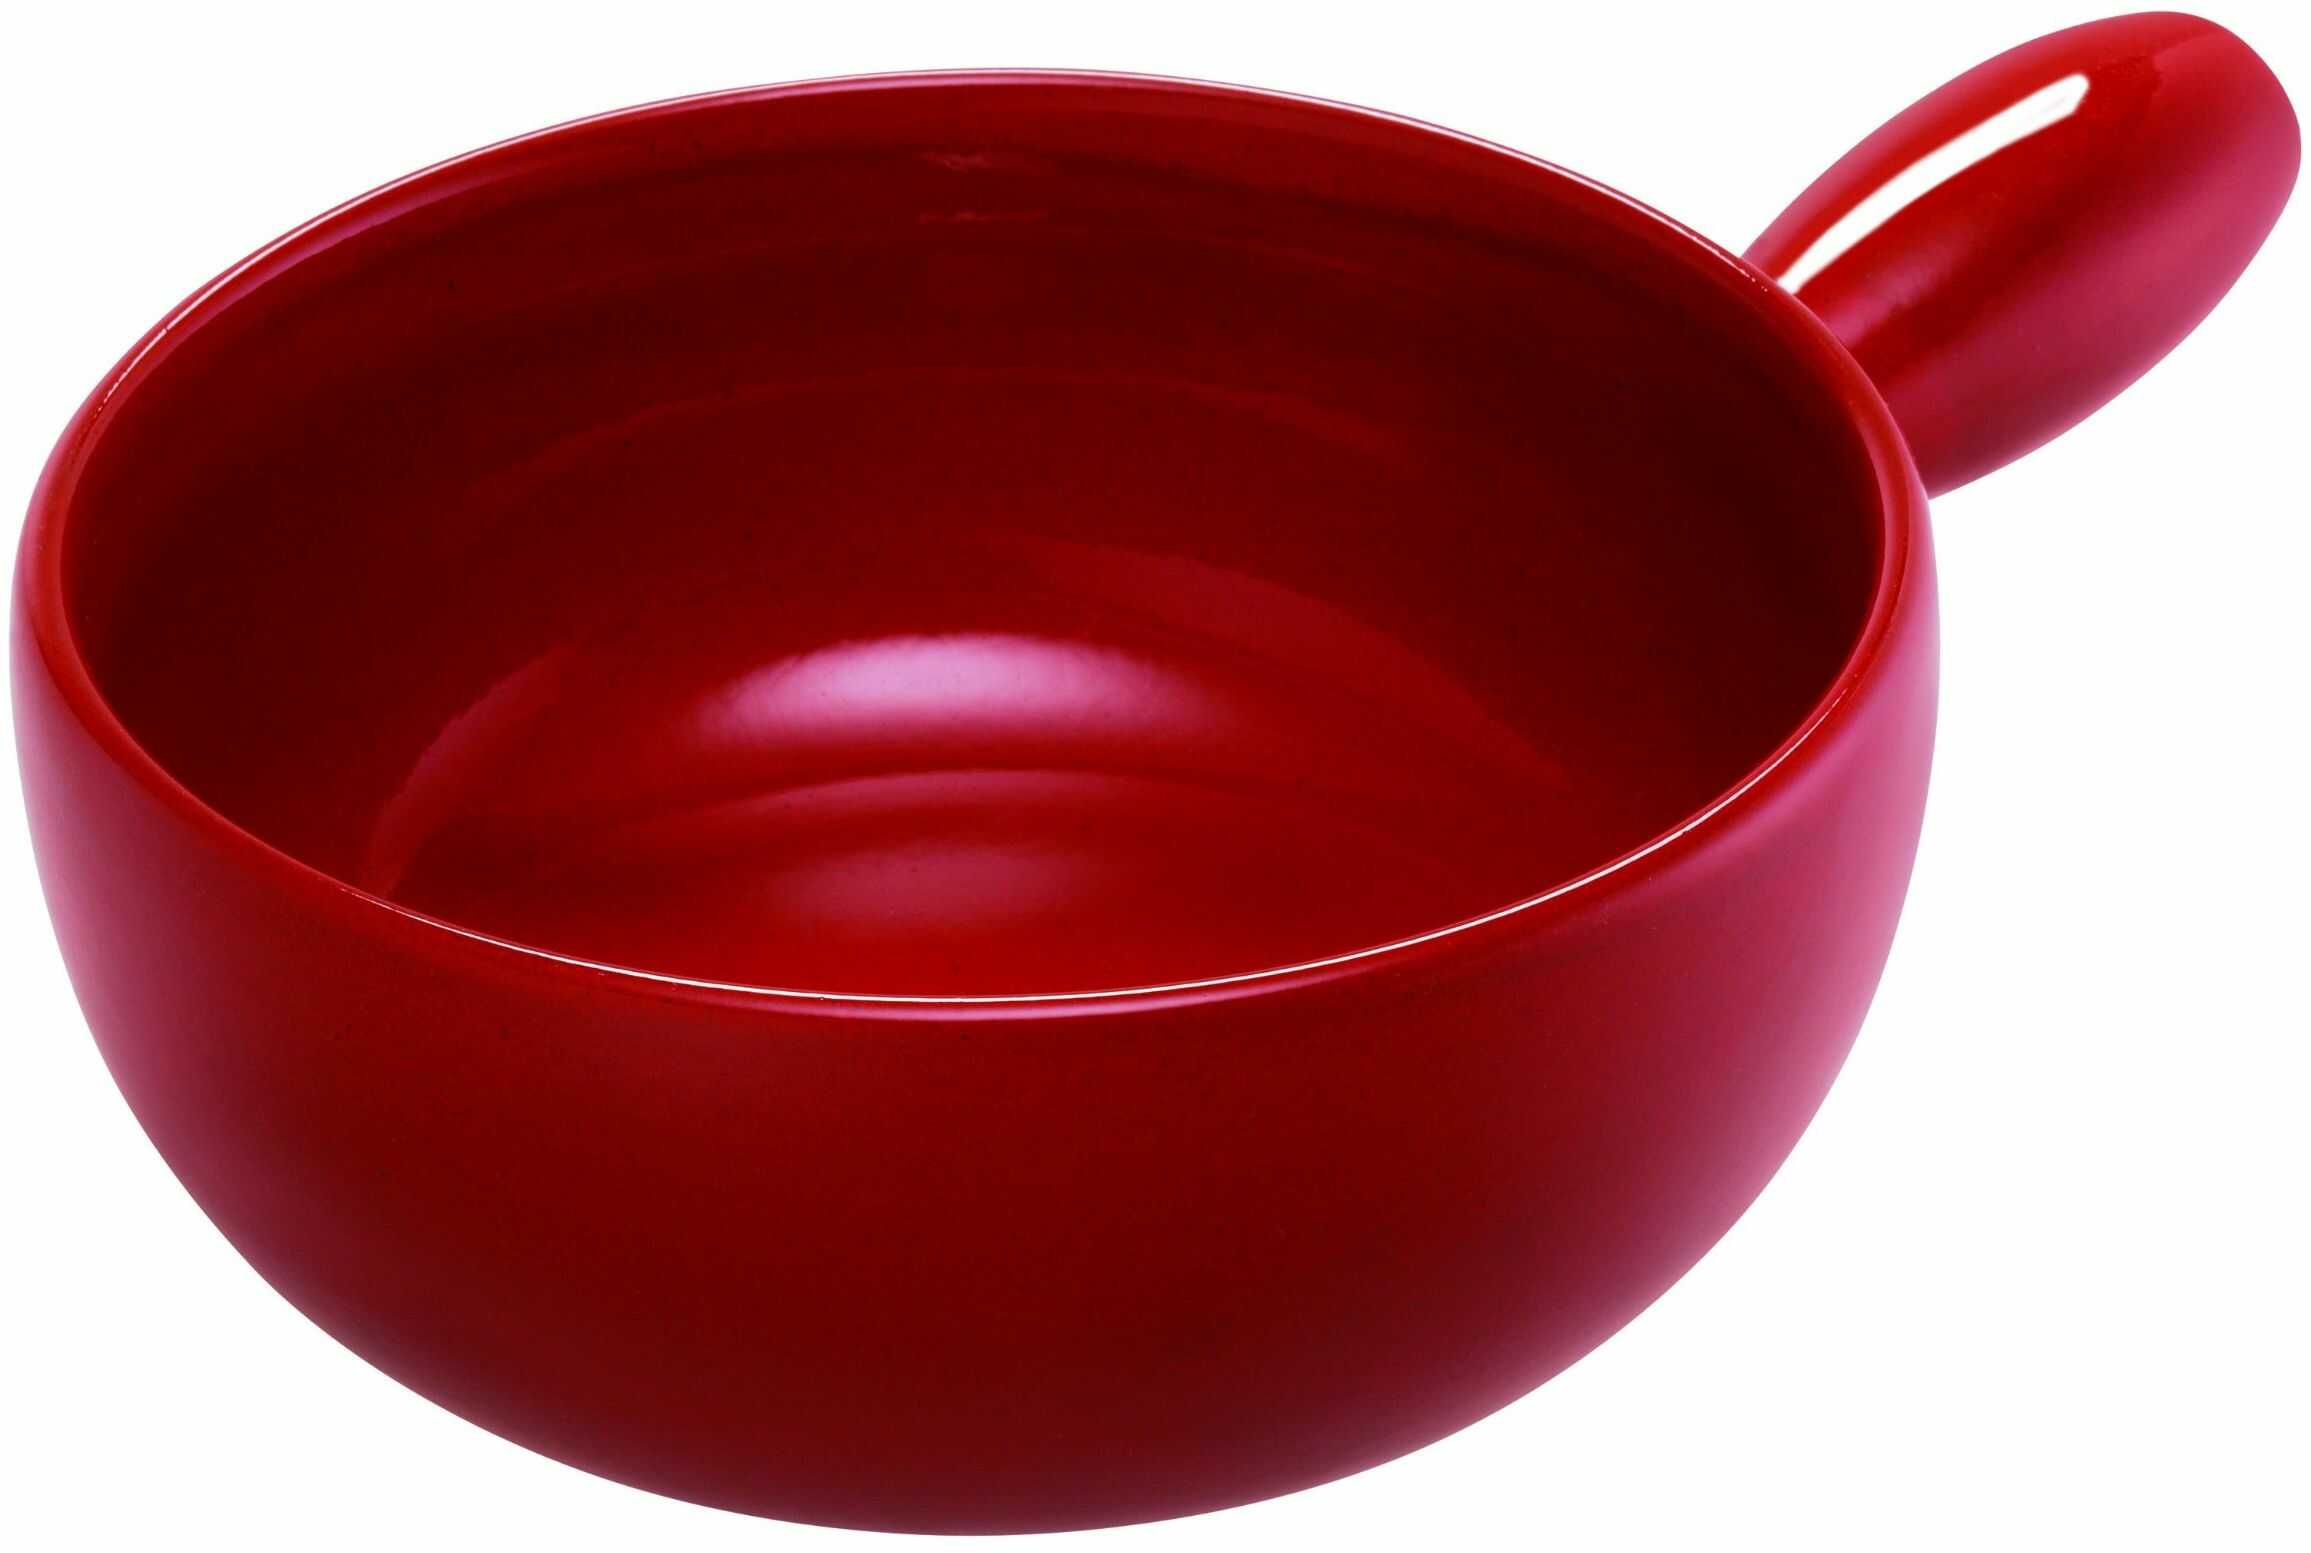 Kuhn Rikon Classic 32185 Caquelon garnek do fondue 22 cm, żeliwny czerwony, 31,5 x 21 x 8,8 cm